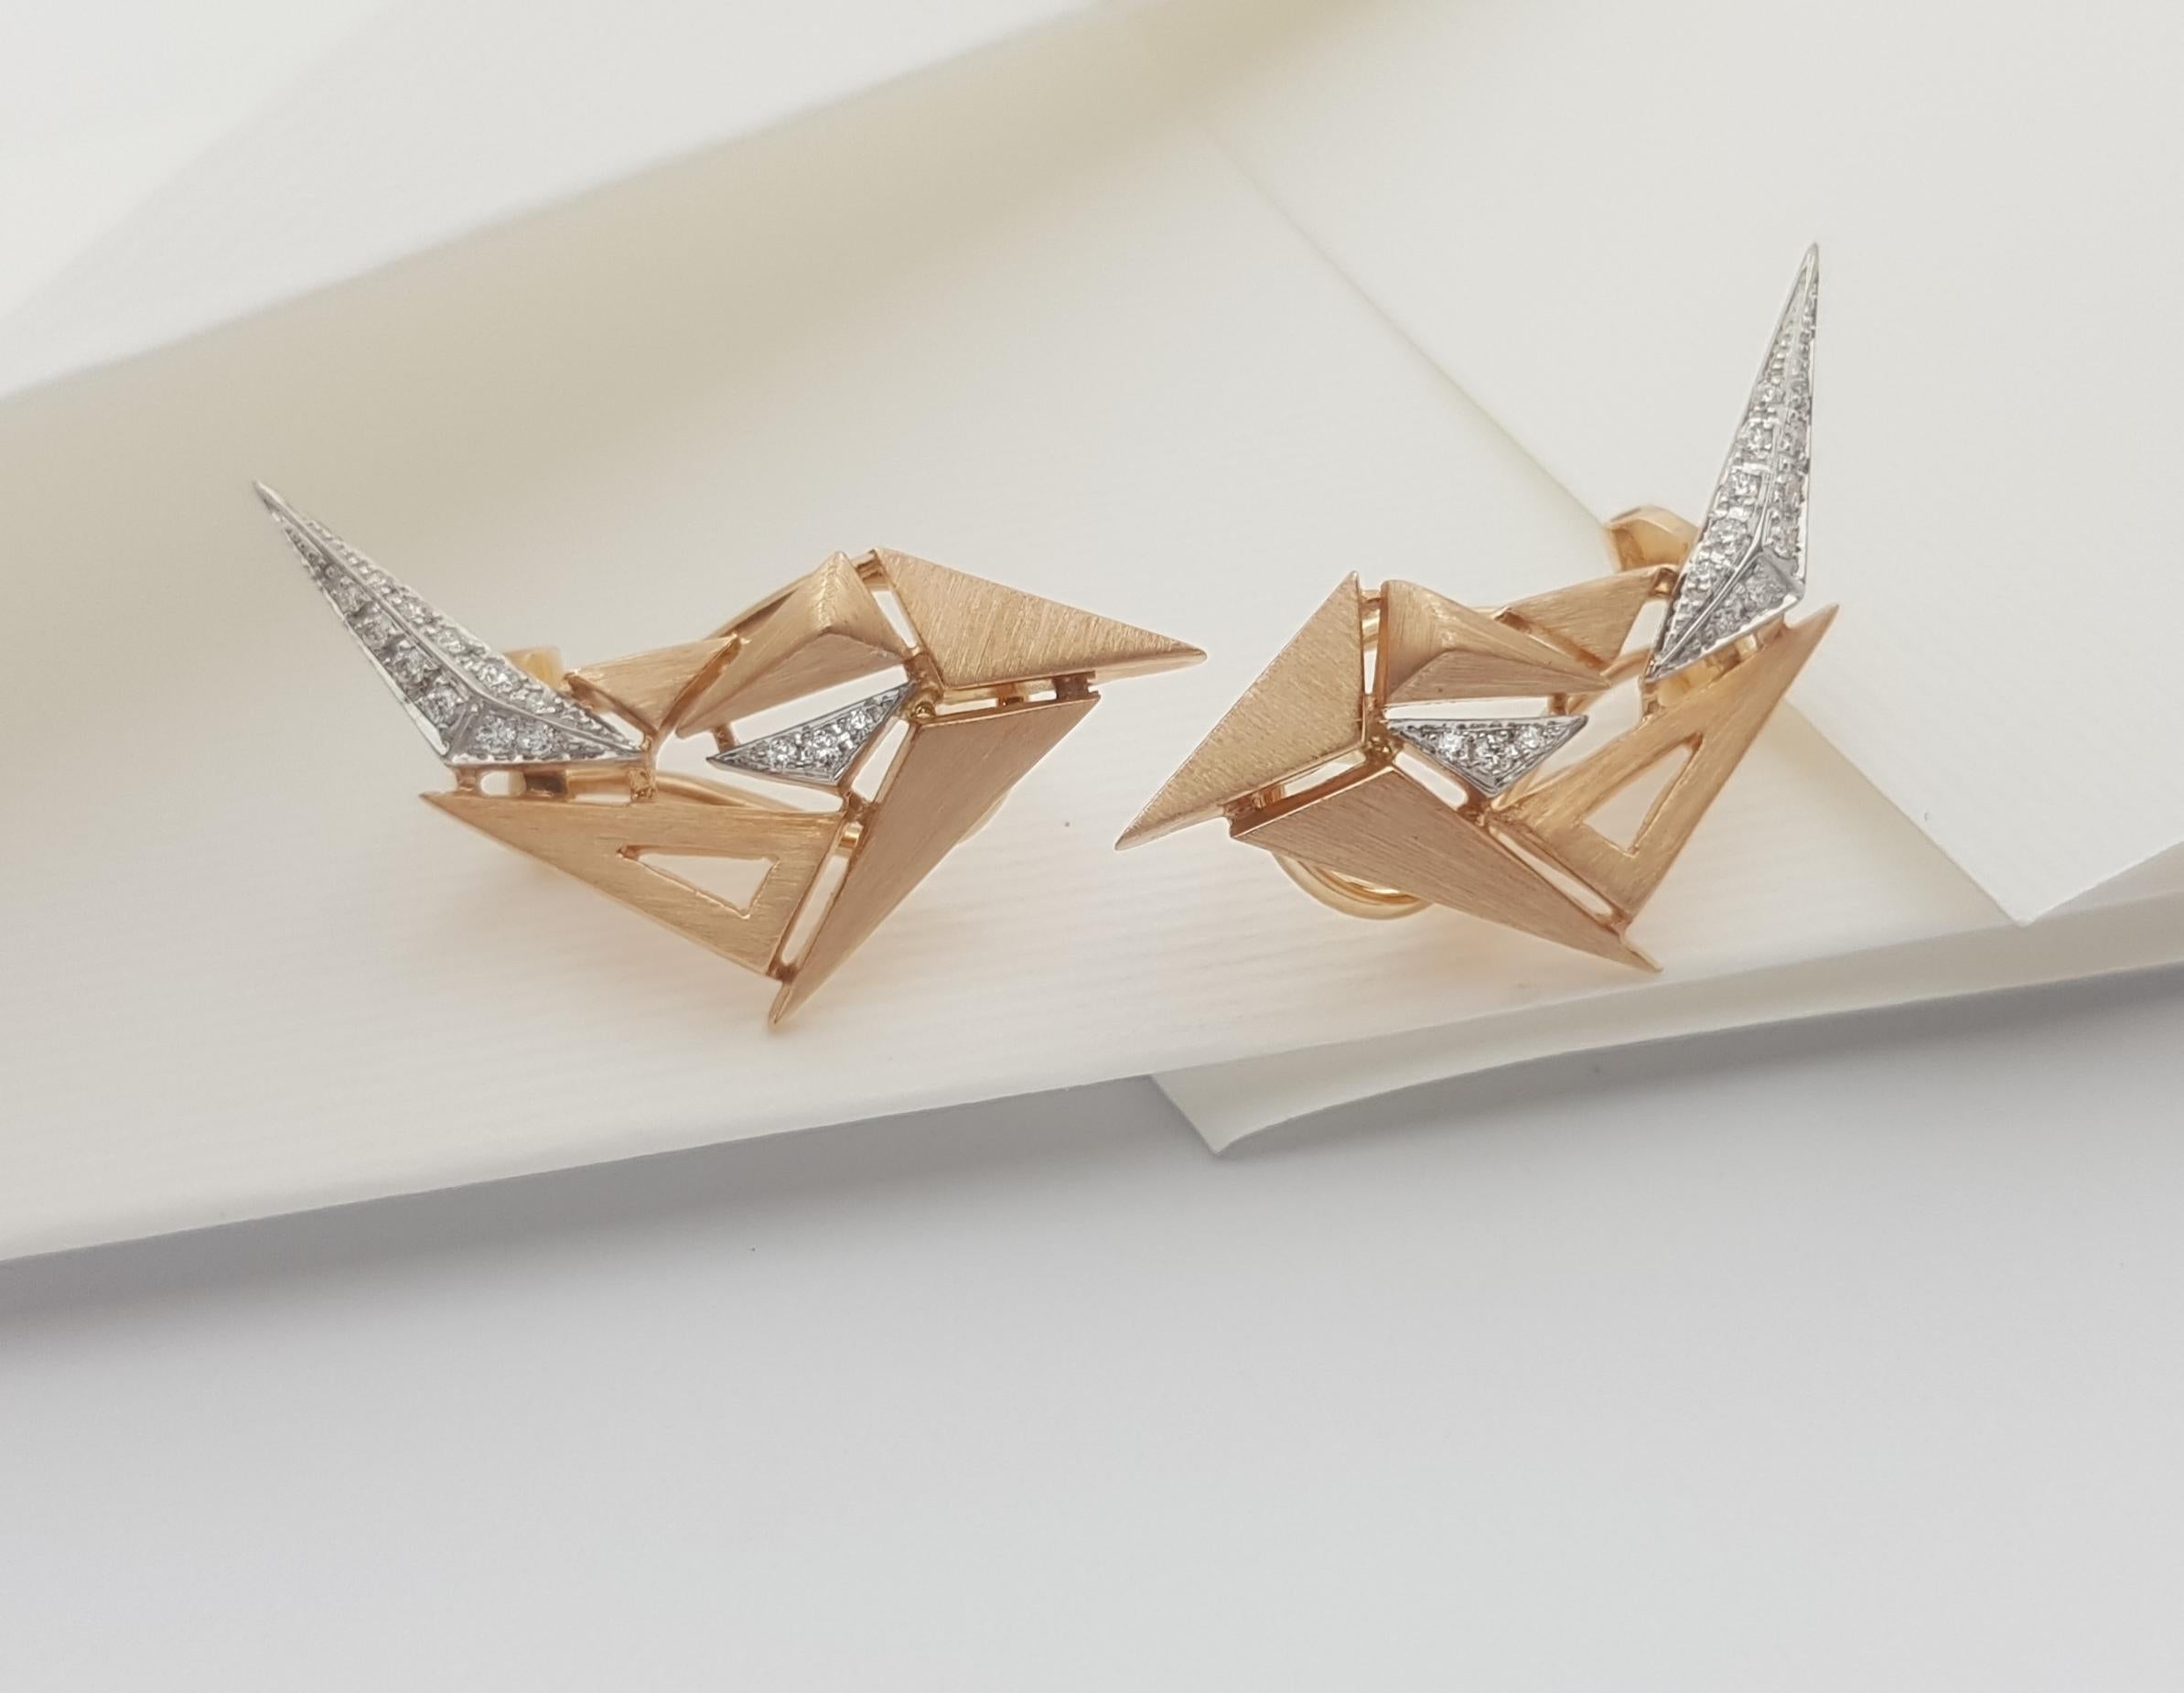 Diamant 0,57 Karat Ohrringe 18K Rose Gold

Breite: 1,3 cm
Länge: 1,6 cm
Gewicht: 3,07 Gramm

Die alte japanische Tradition des Papierfaltens hat die Form und die Elemente dieser modernen Kollektion inspiriert. Durch eine Reihe von Falten und